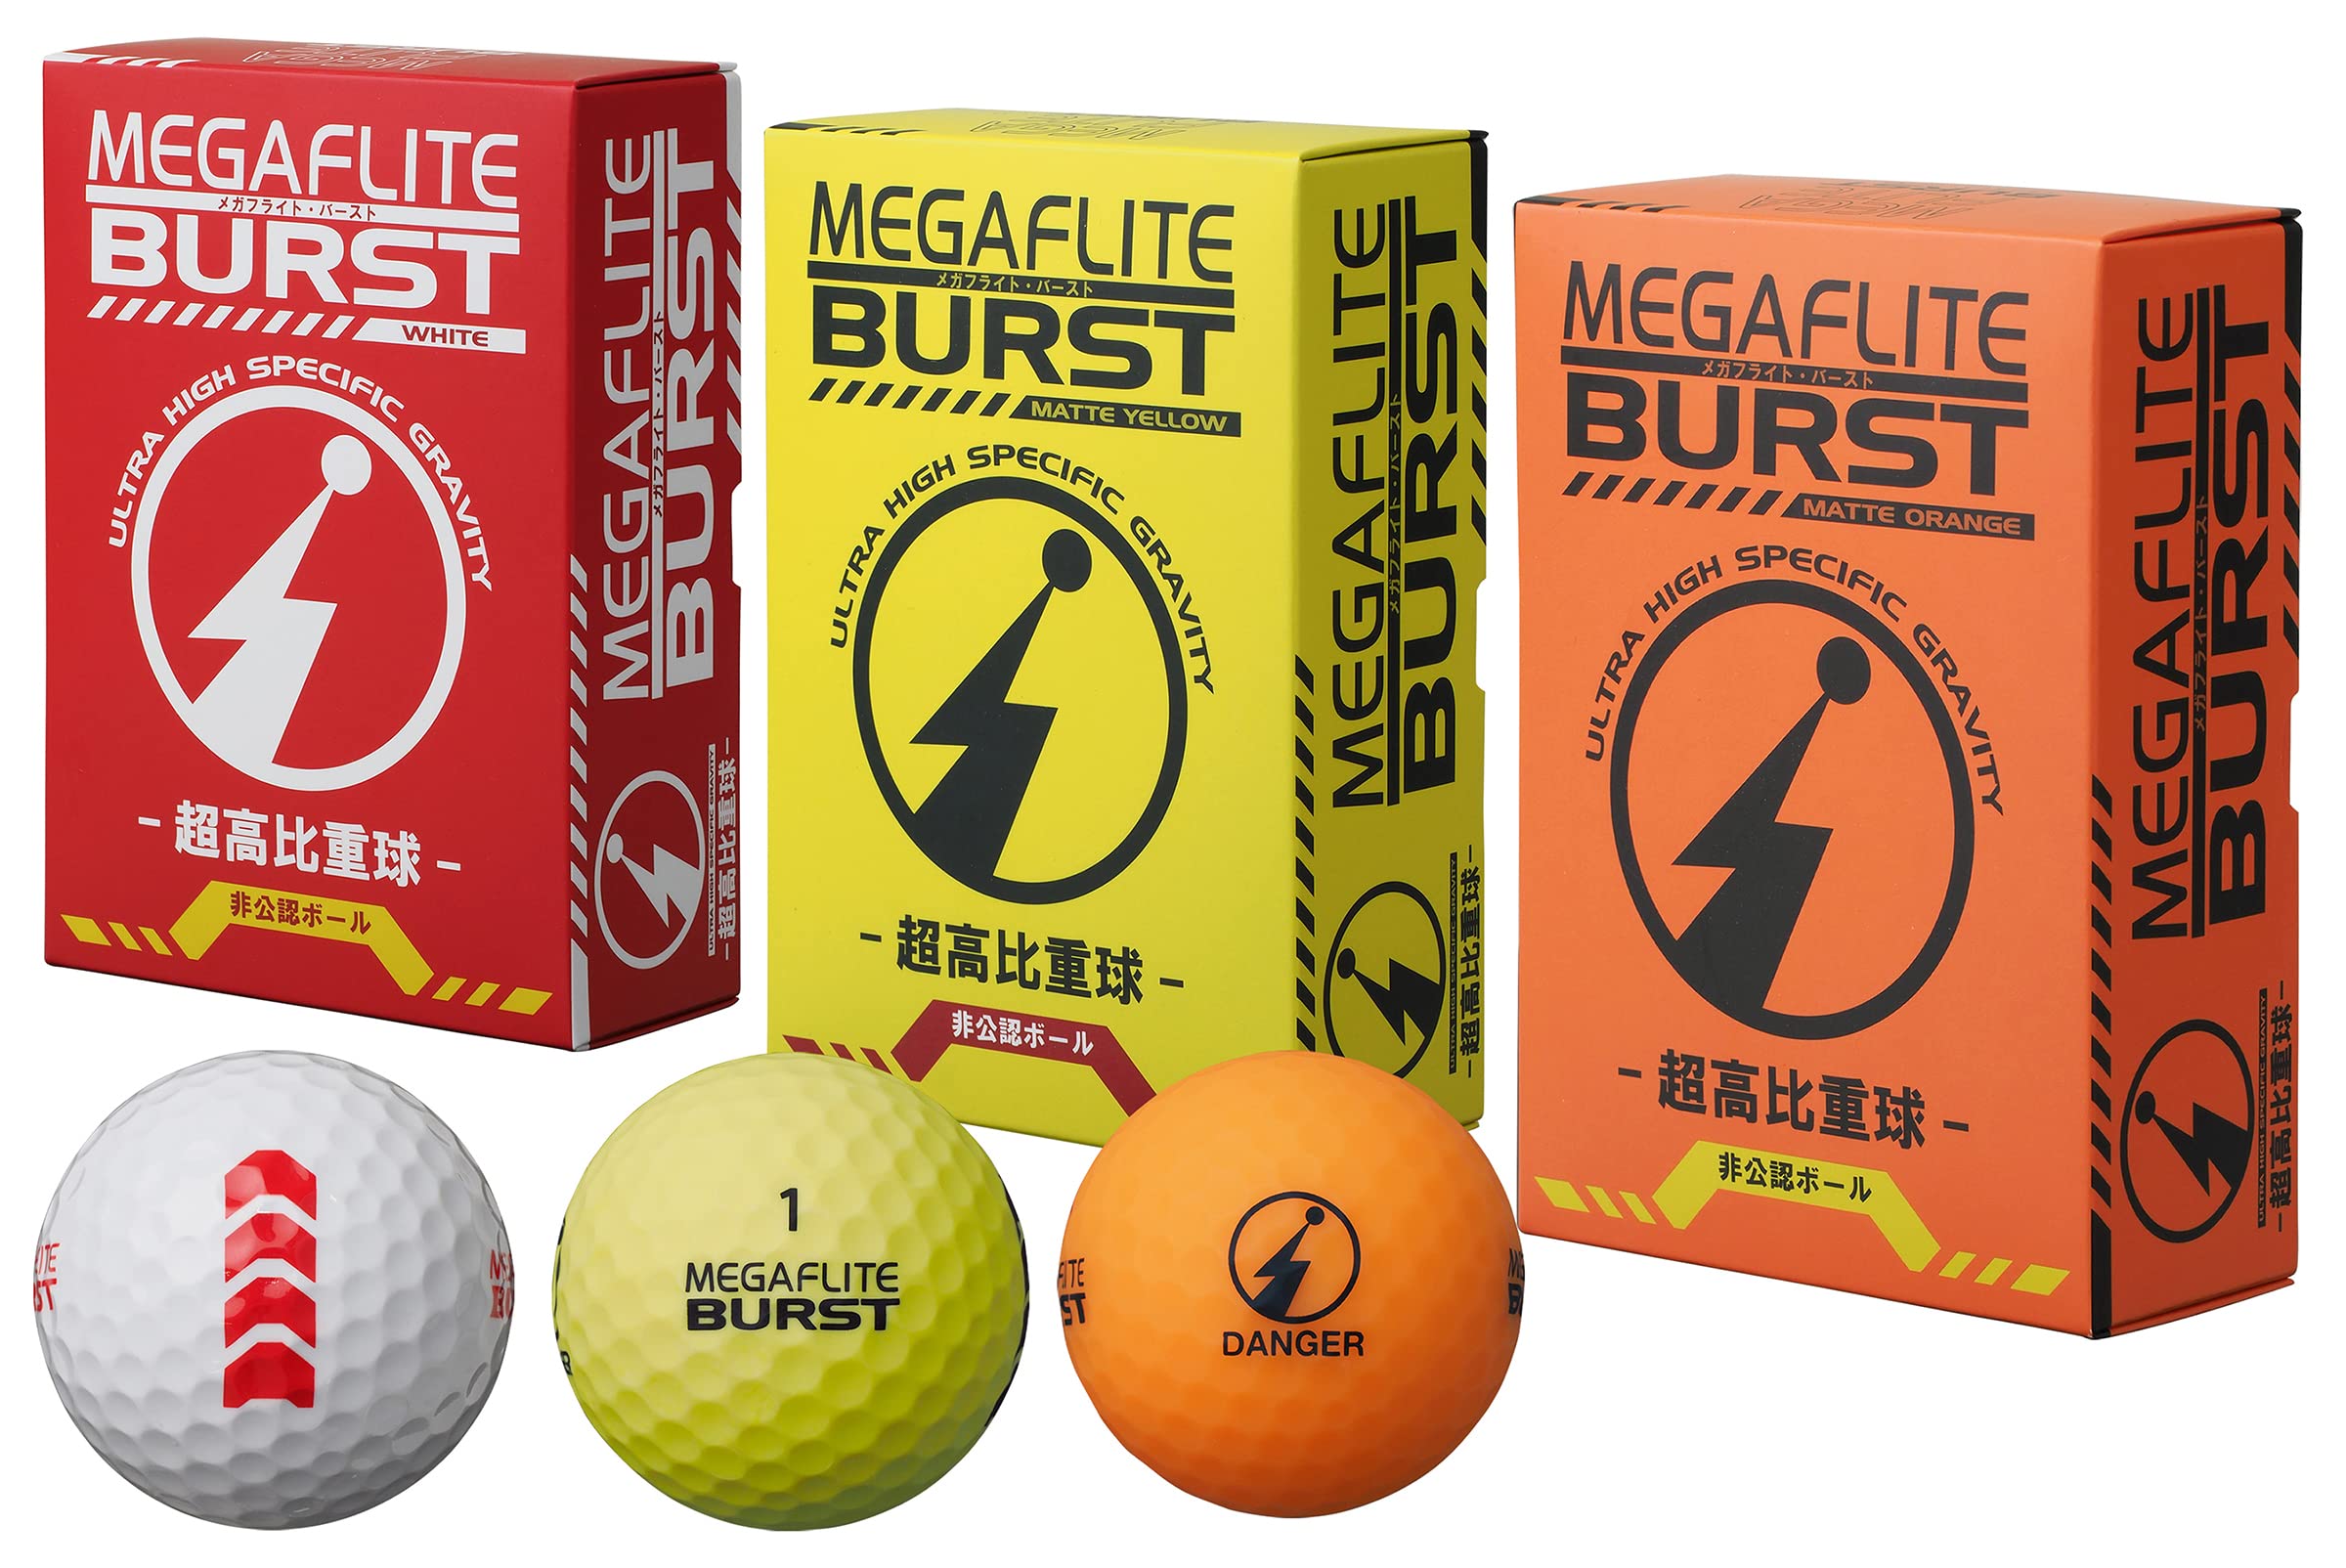 アサヒゴルフ(Asahi Golf) MEGAFLITE BURST 非公認BALL 6P